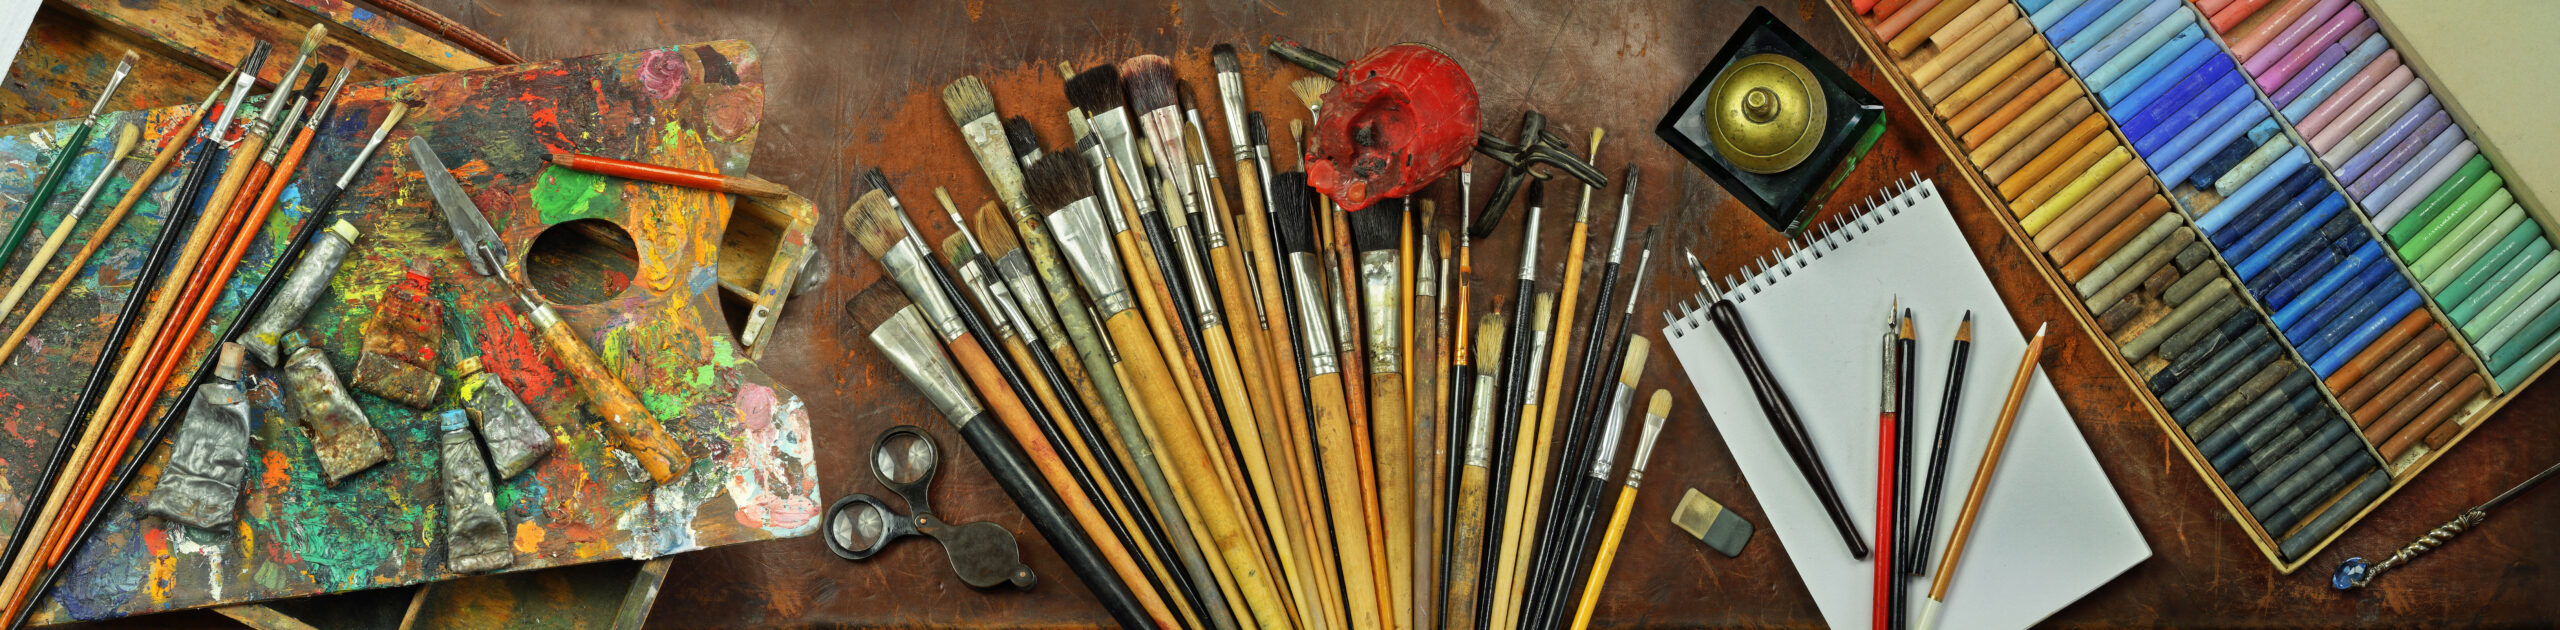 Старые инструменты художника